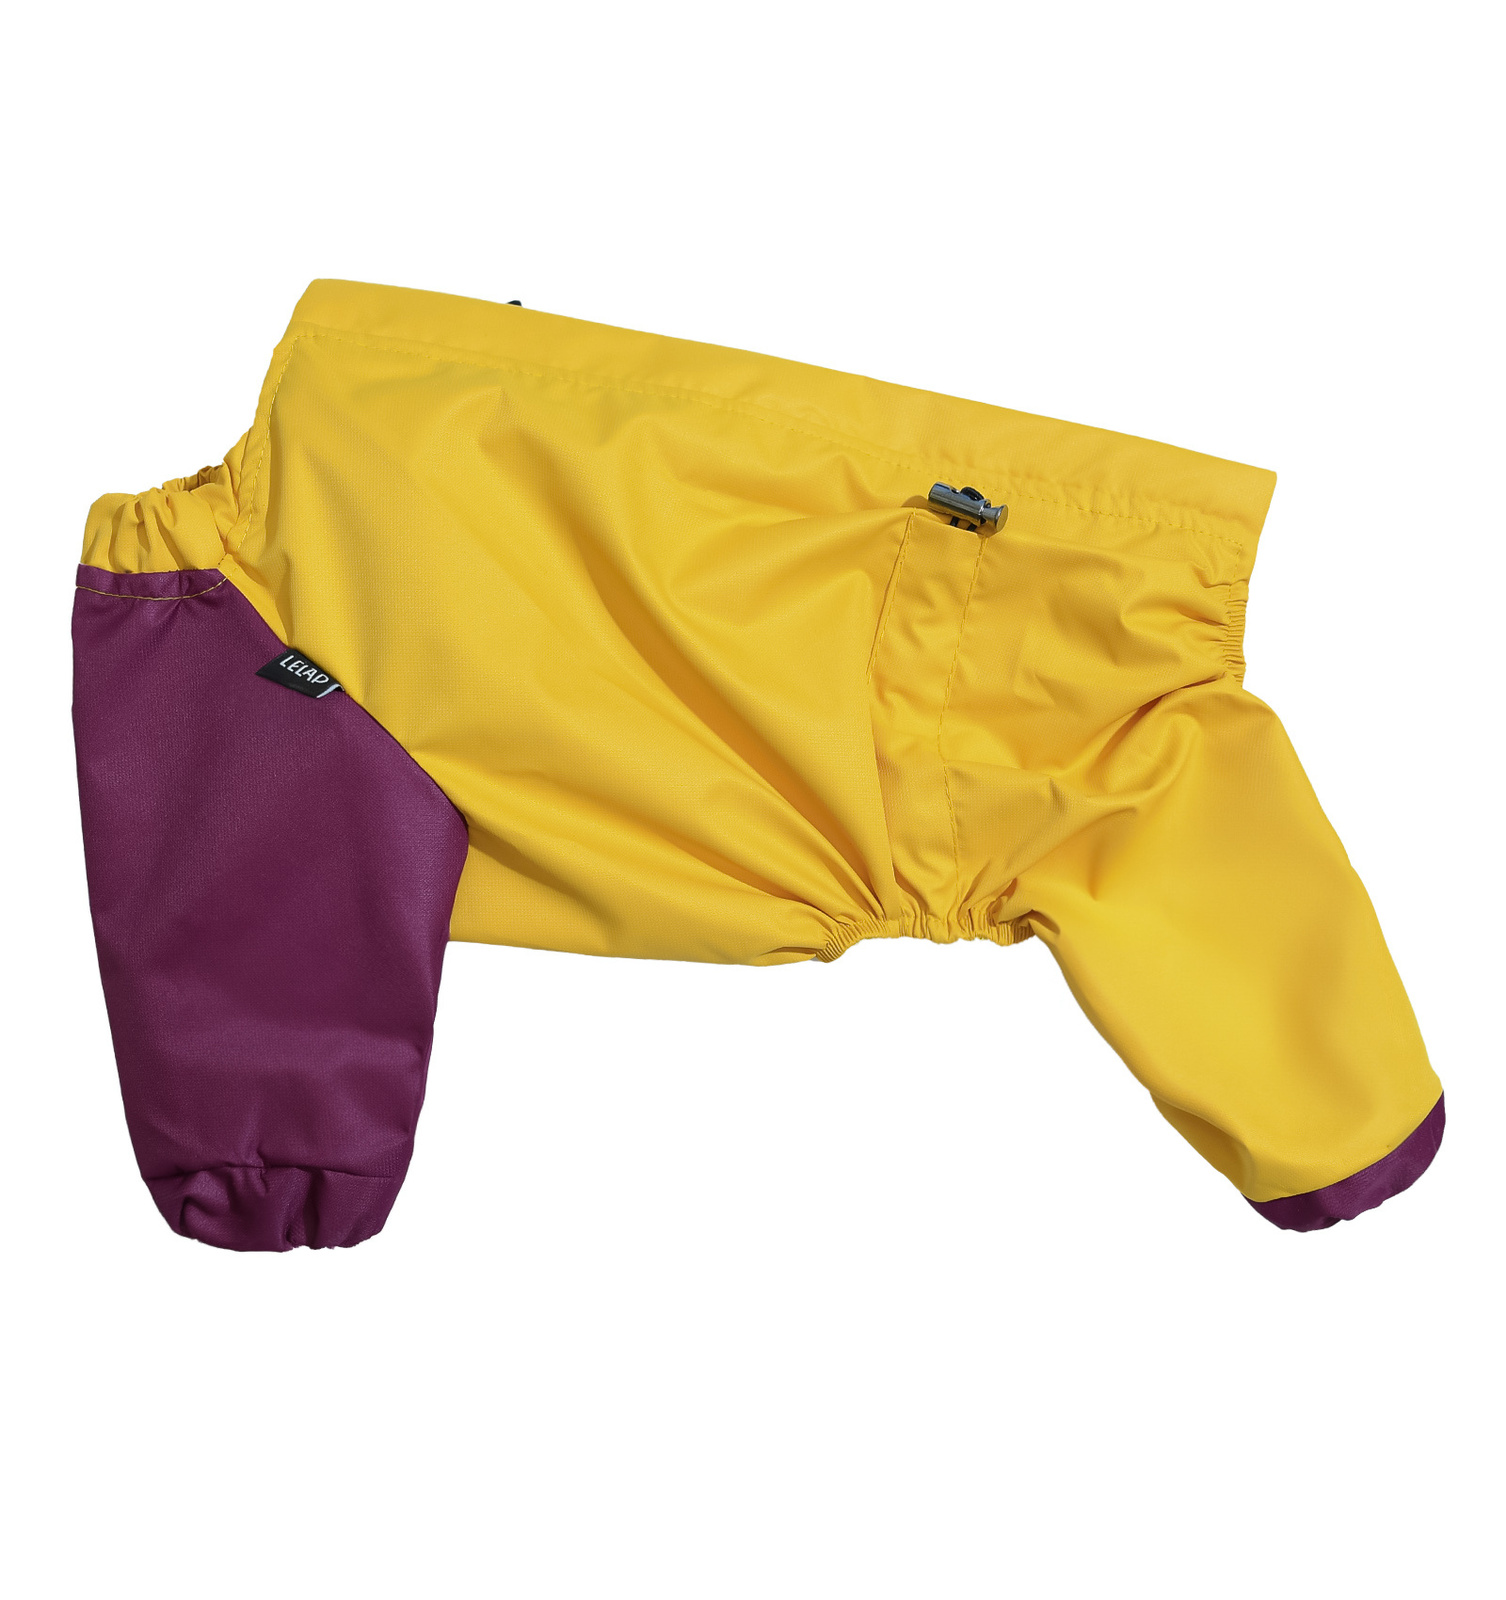 Lelap одежда Lelap одежда дождевик для собак на молнии Banana (XL) lelap одежда lelap одежда поло бон для собак голубое xl